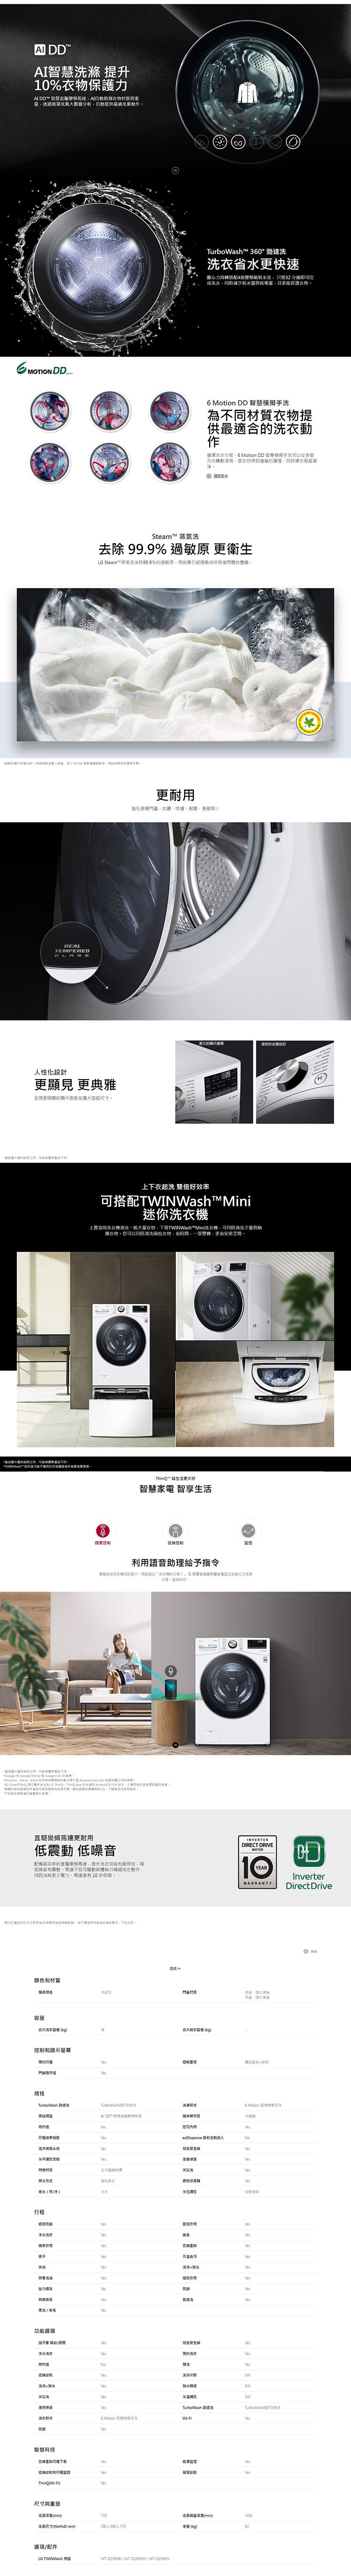 LG WD-S18VW 滾筒洗衣機 18公斤 蒸洗脫 AI 智慧感測 提供最適洗程